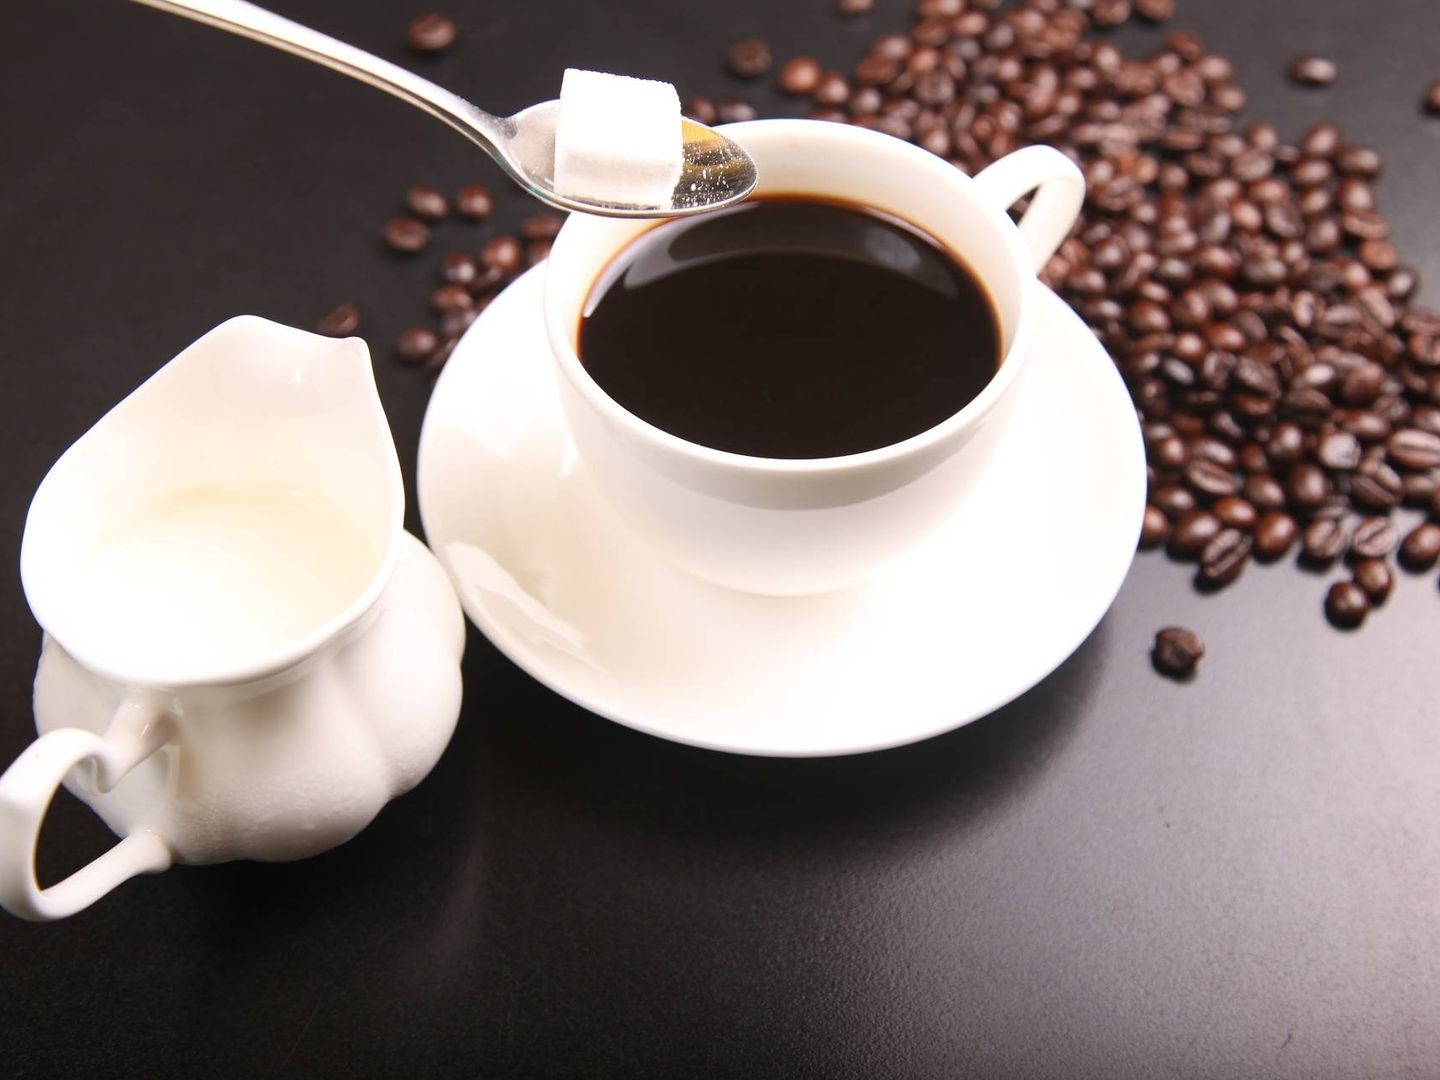 El café ocasiona acidez estomacal, indigestión, ardor de estómago o irritación intestinal.